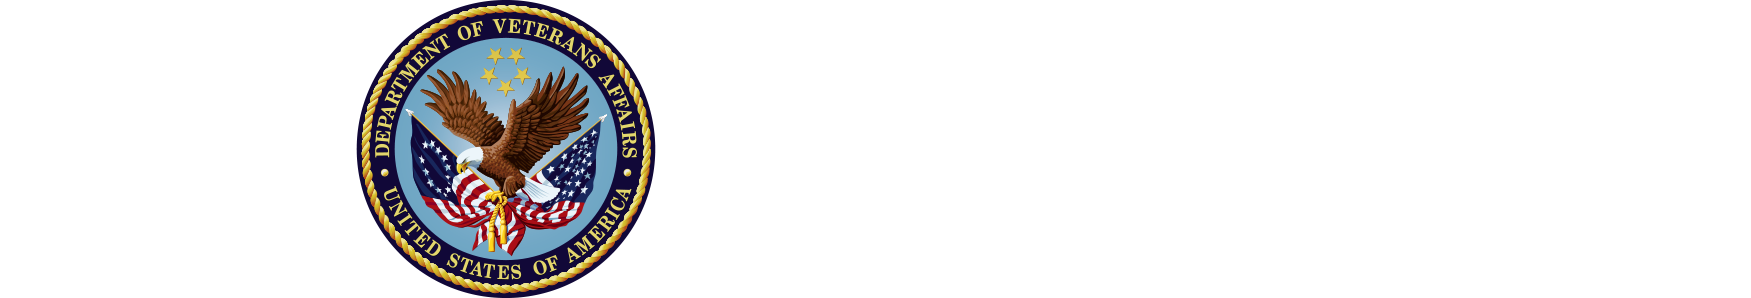 William S. Middleton Memorial Veterans Hospital